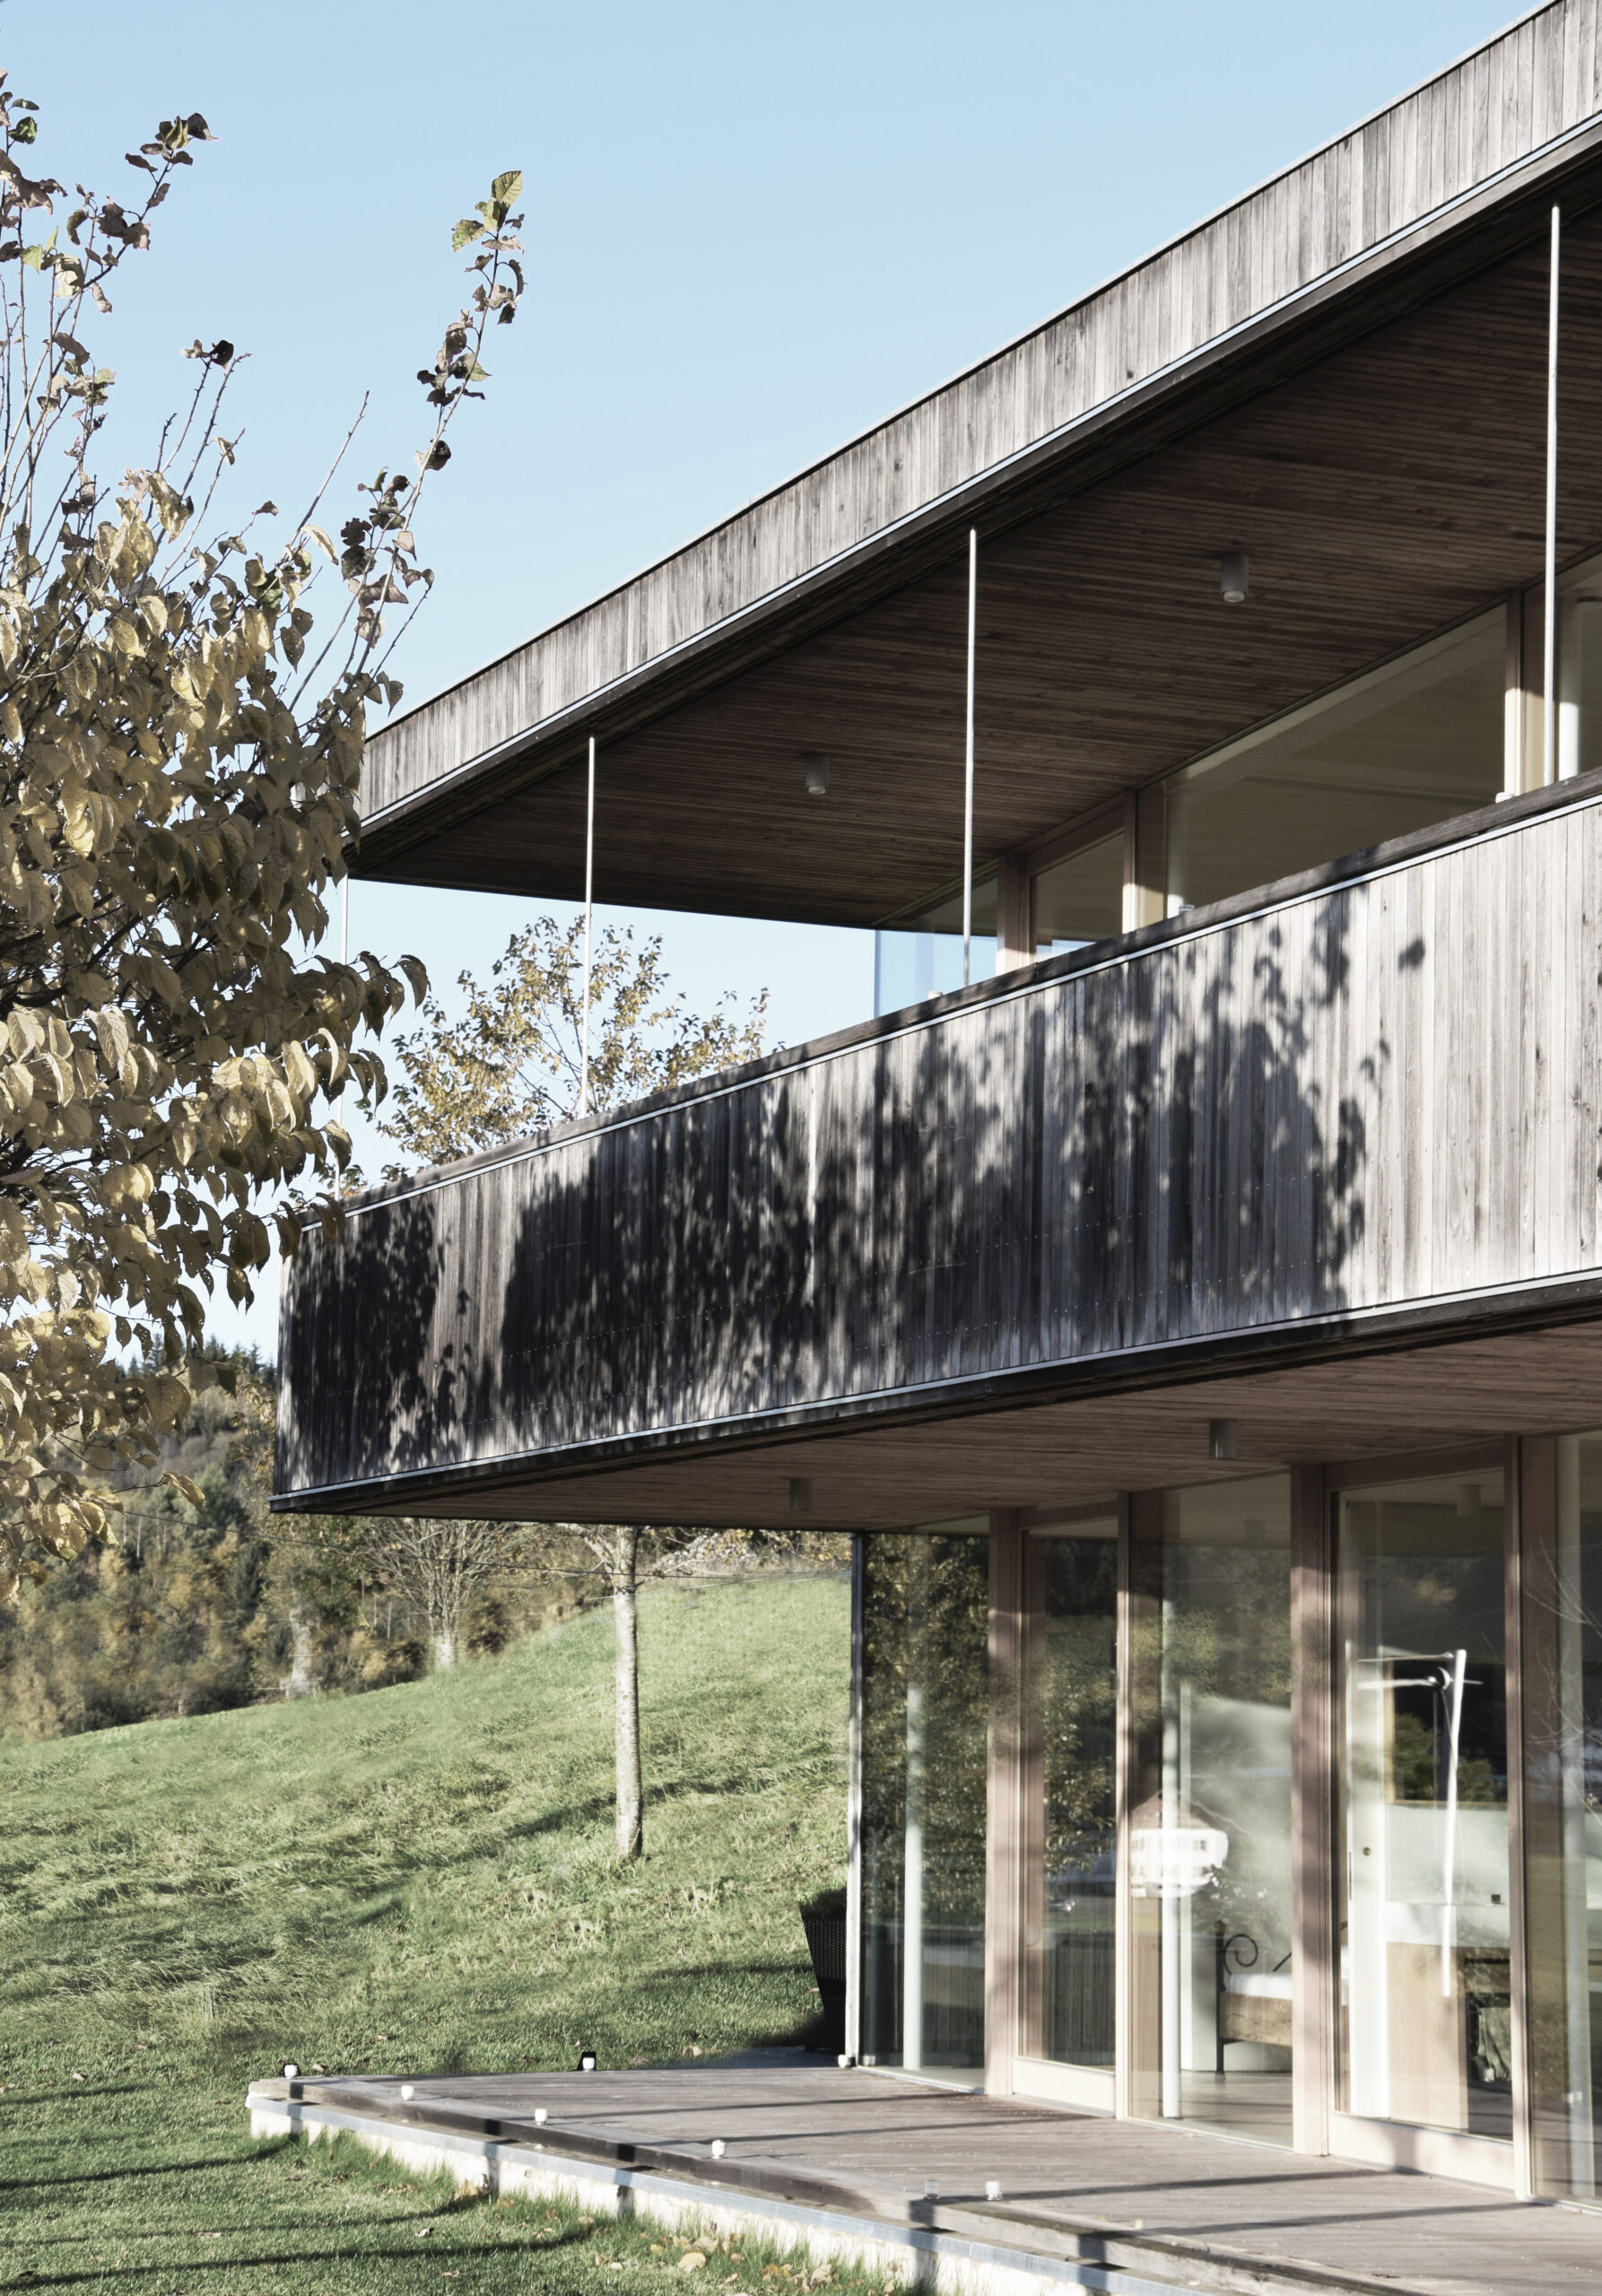 Michael-Becker-Architects-Architekten-Haus-s-03